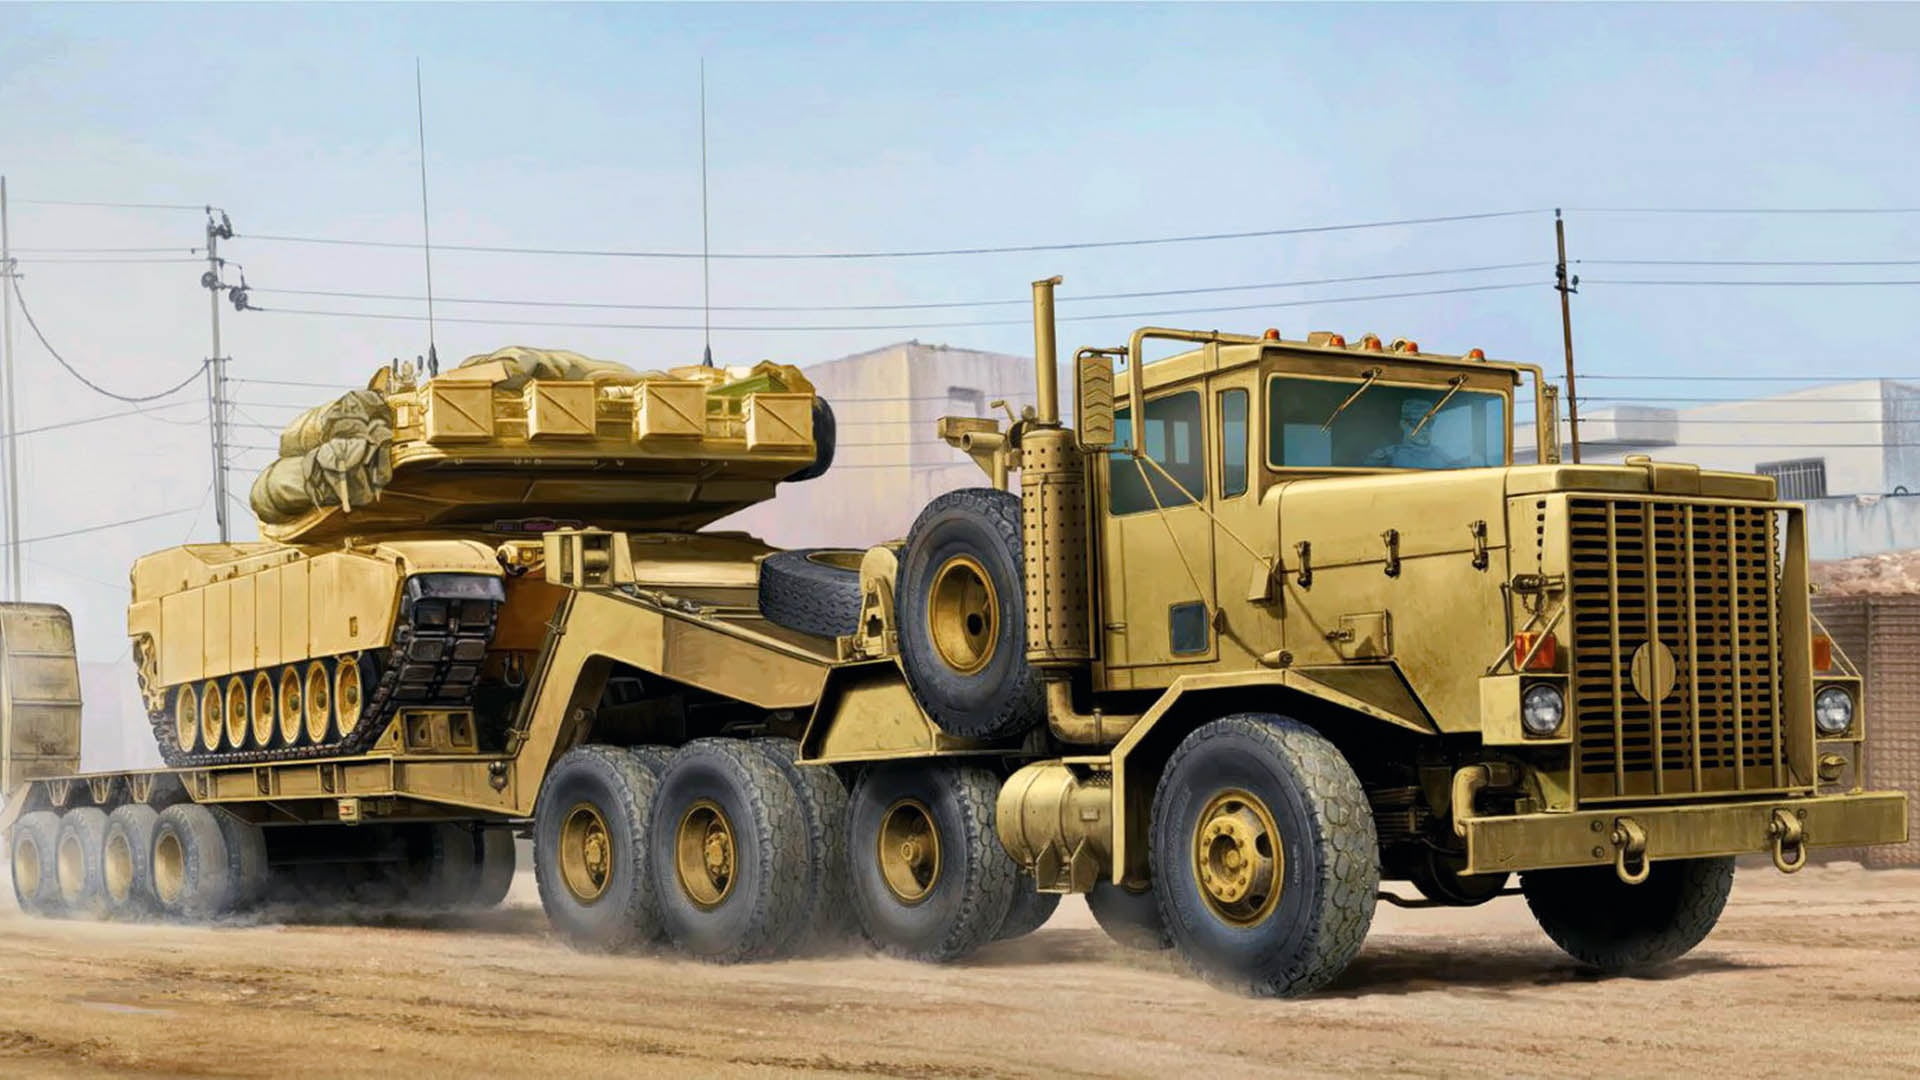 USA, Oshkosh, Army truck, Heavy Equipment Transport System